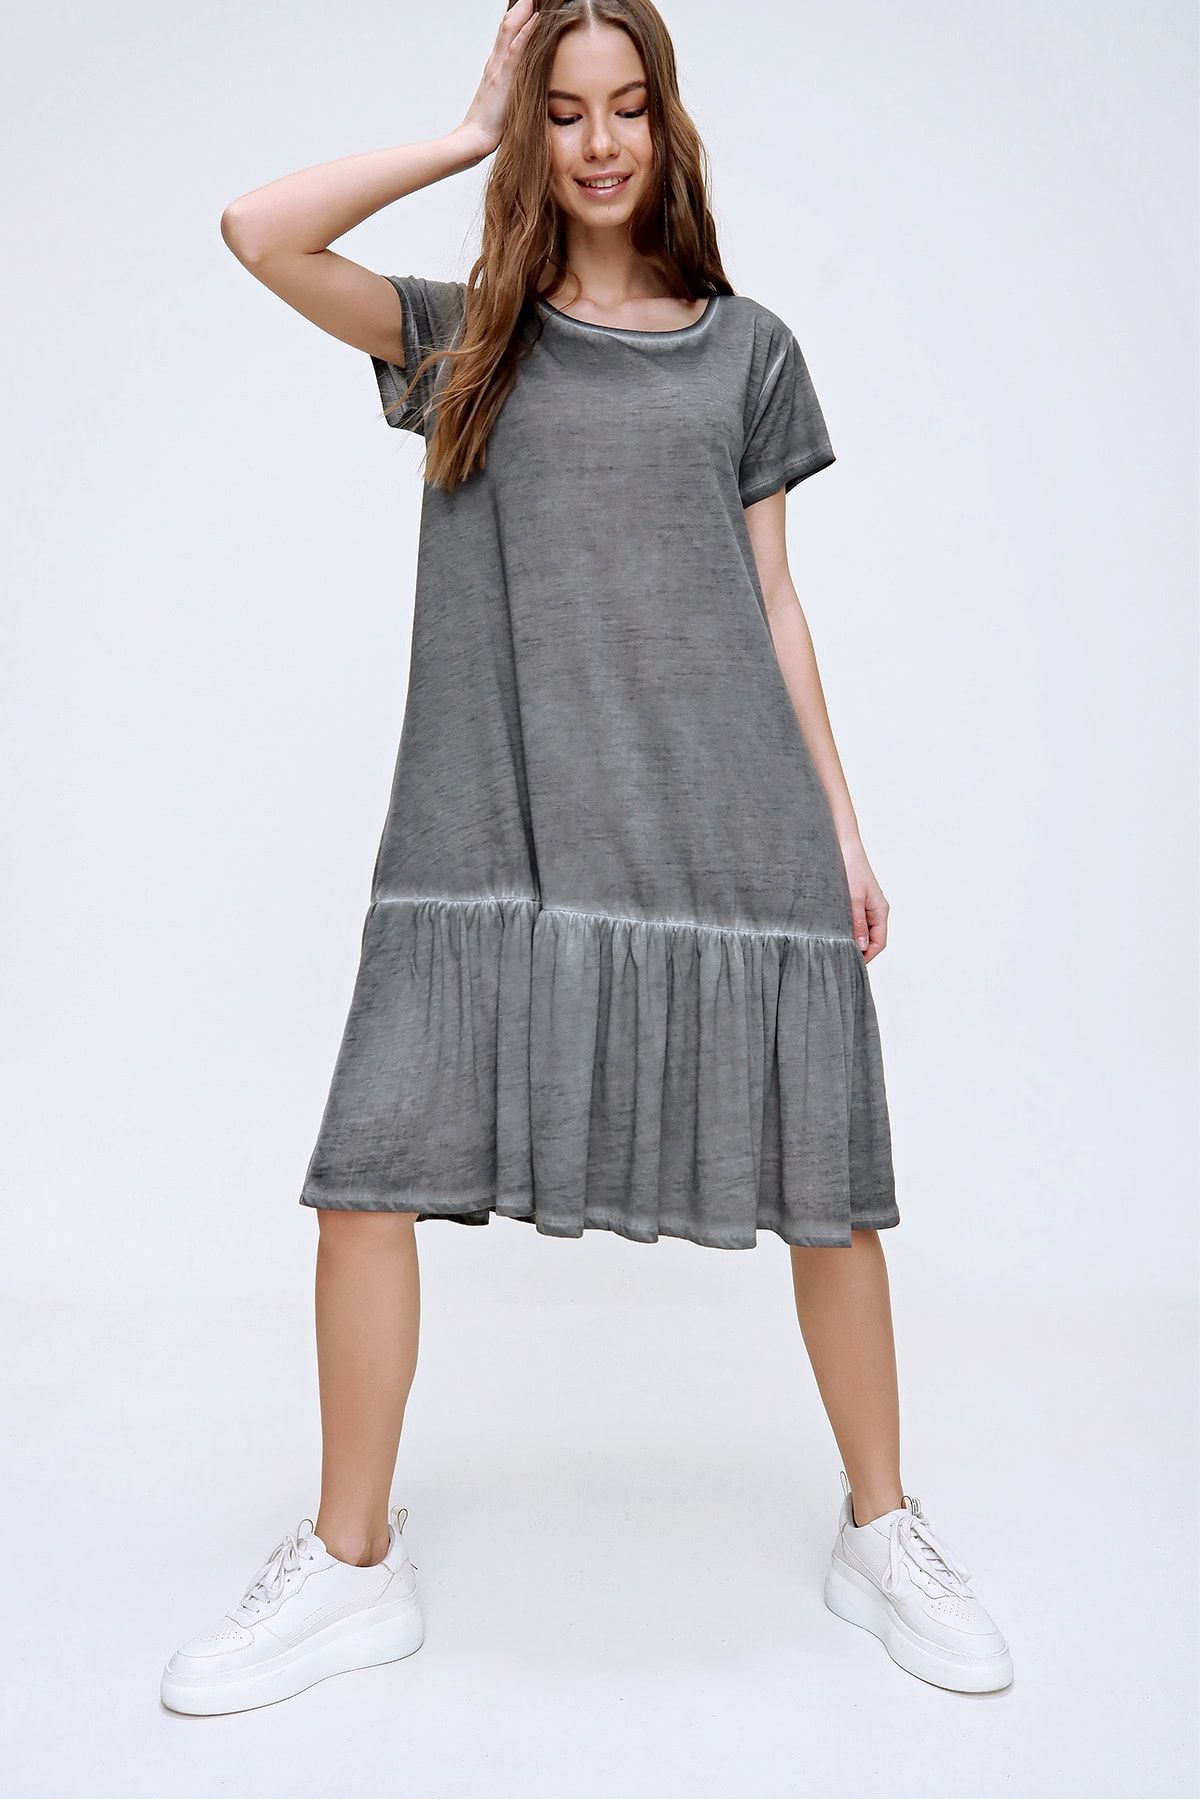 Trend Alaçatı Stili Kadın Antrasit Eteği Volanlı Yıkamalı Elbise MDA-1129